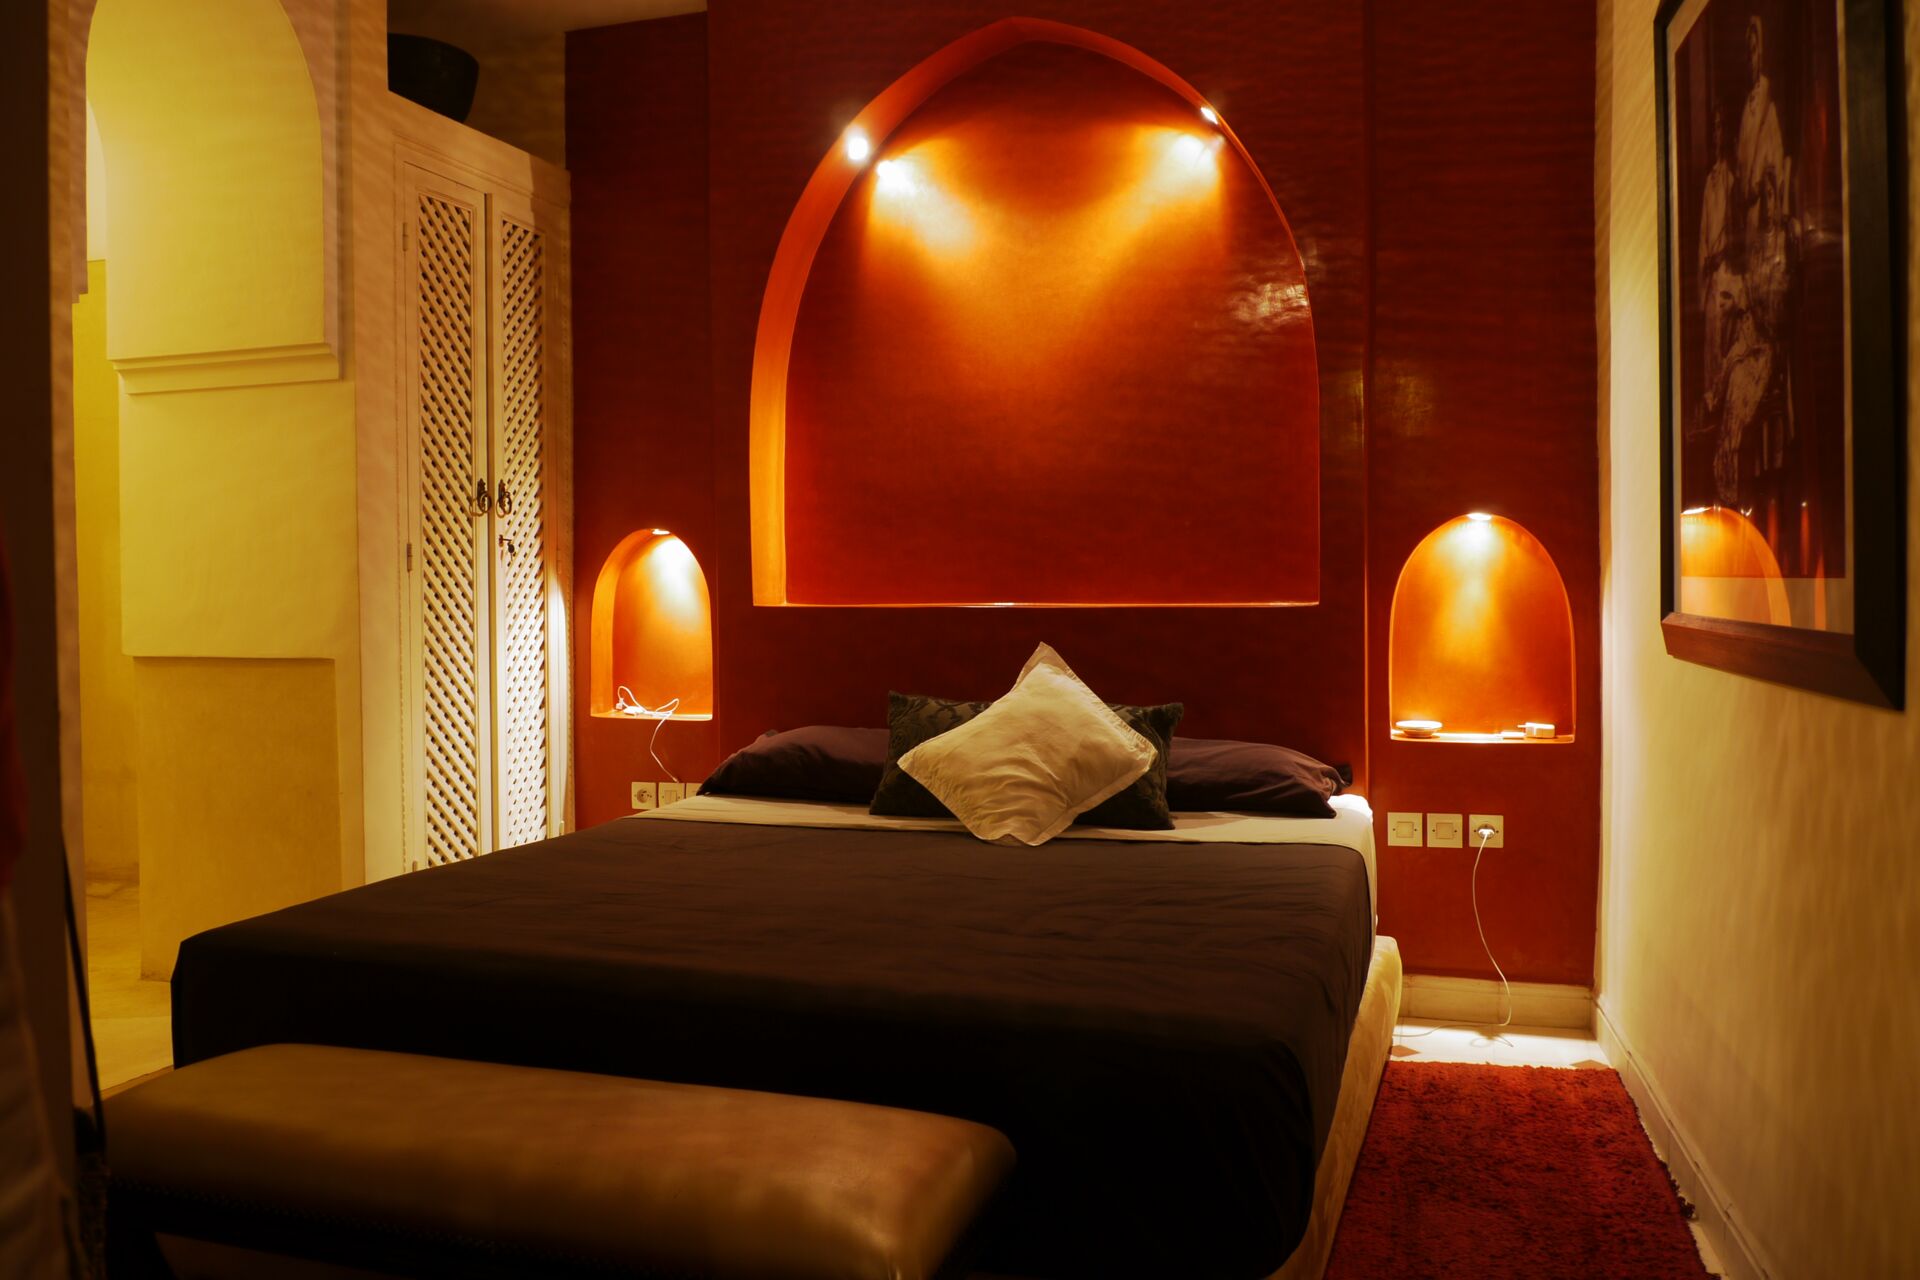 Indirekt beleuchtetes Doppelzimmer im orientalischen Stil